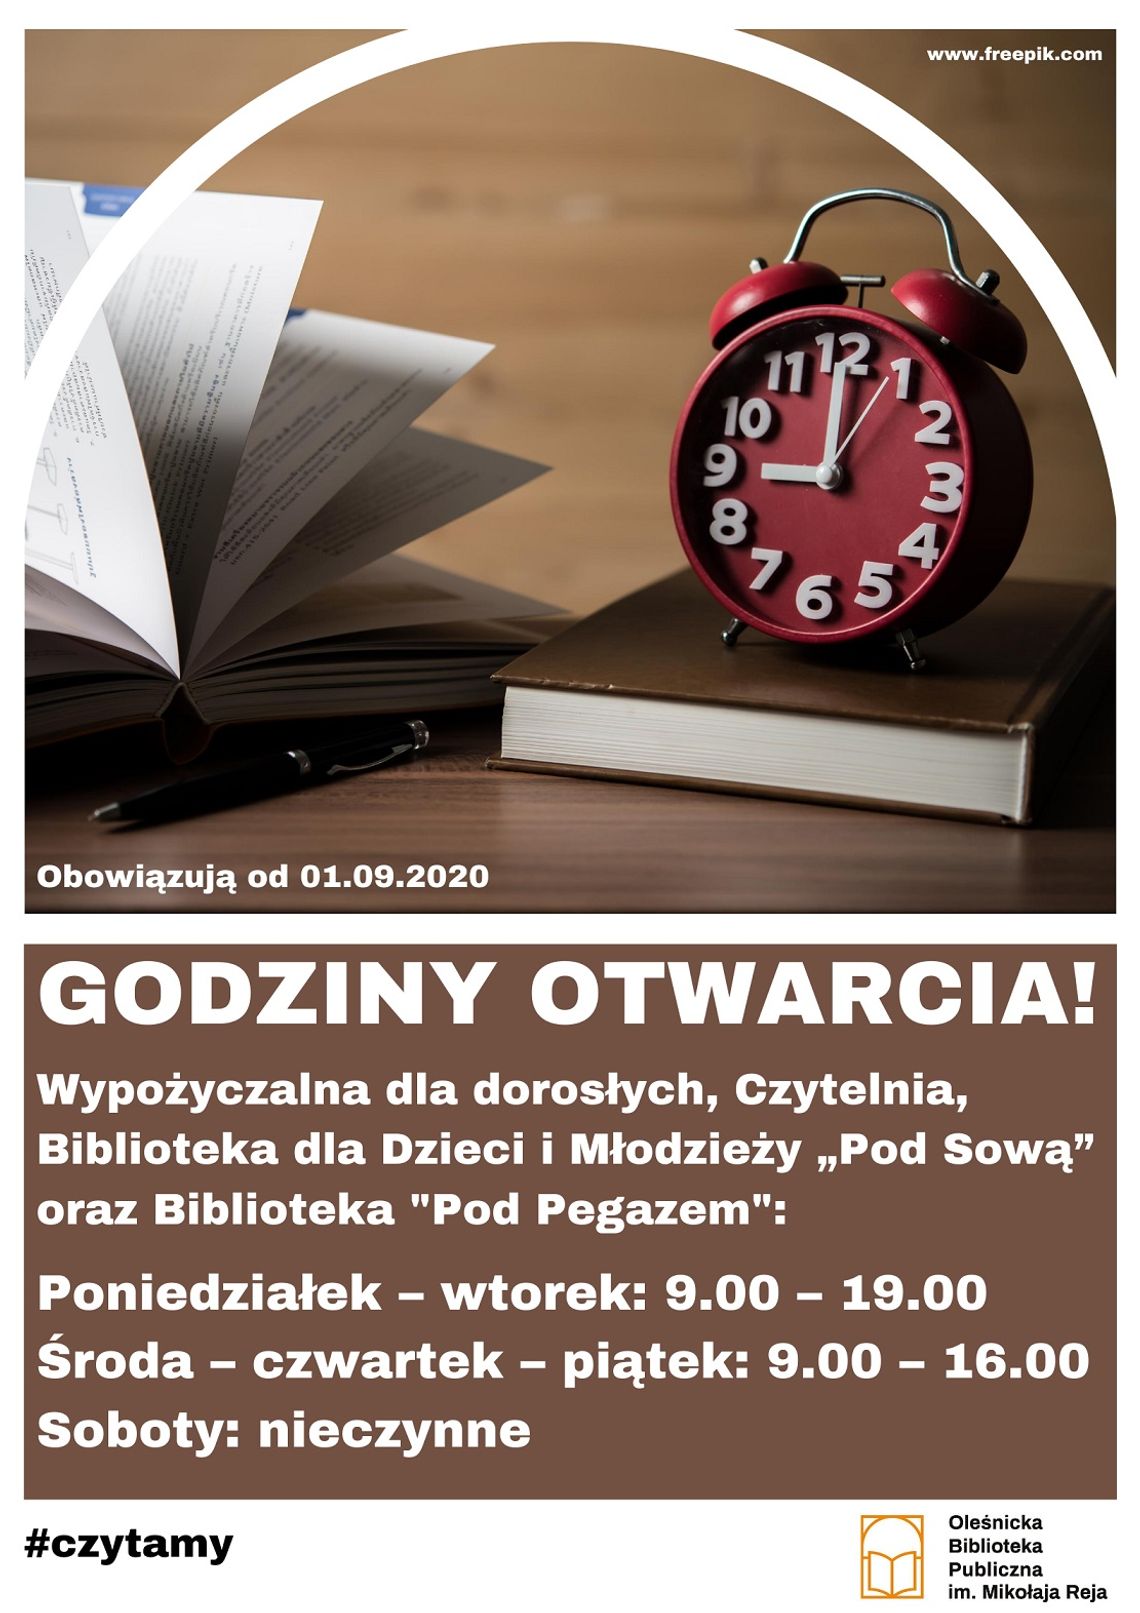 Oleśnicka Biblioteka Publiczna w czasach pandemii - nowe godziny otwarcia i zasady funkcjonowania